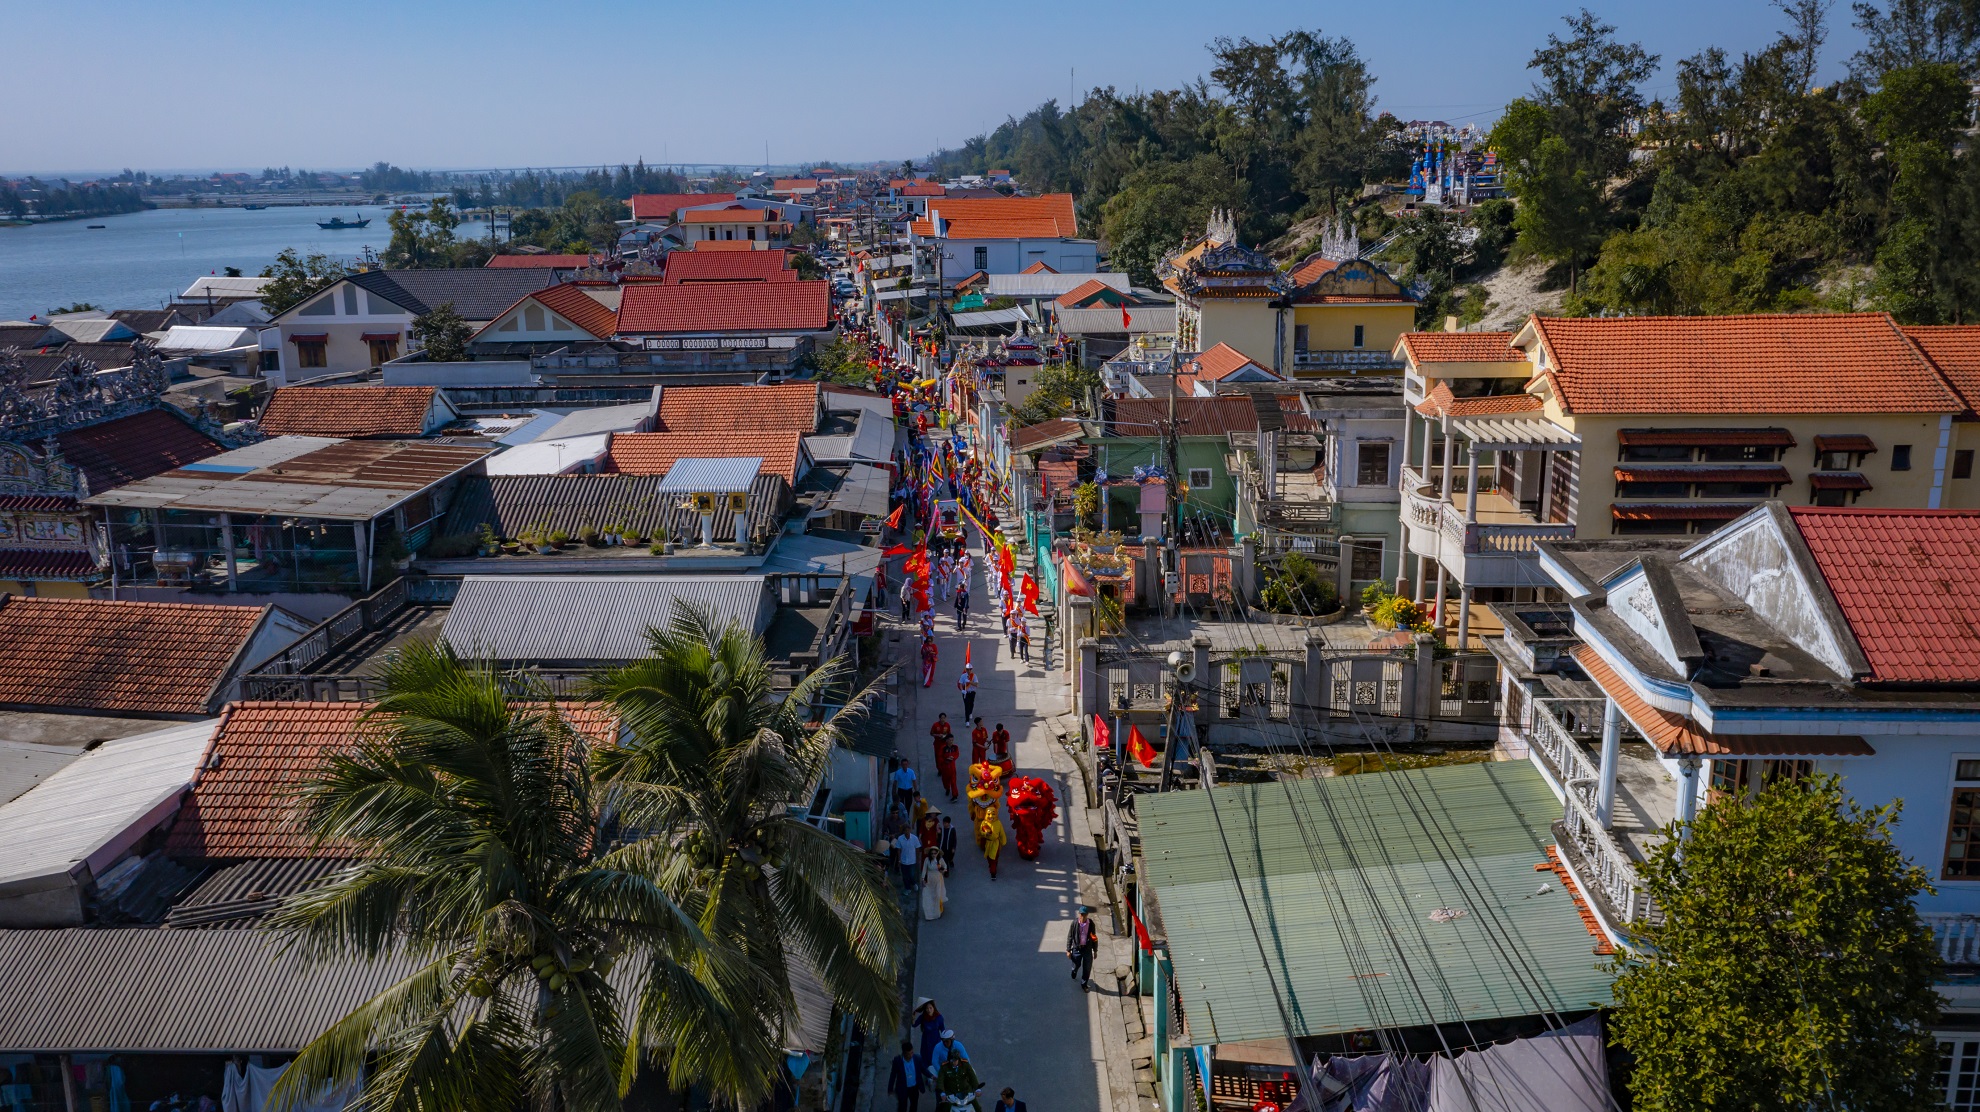 Sôi nổi lễ hội cầu ngư của người dân miền biển Thừa Thiên Huế - Ảnh 3.